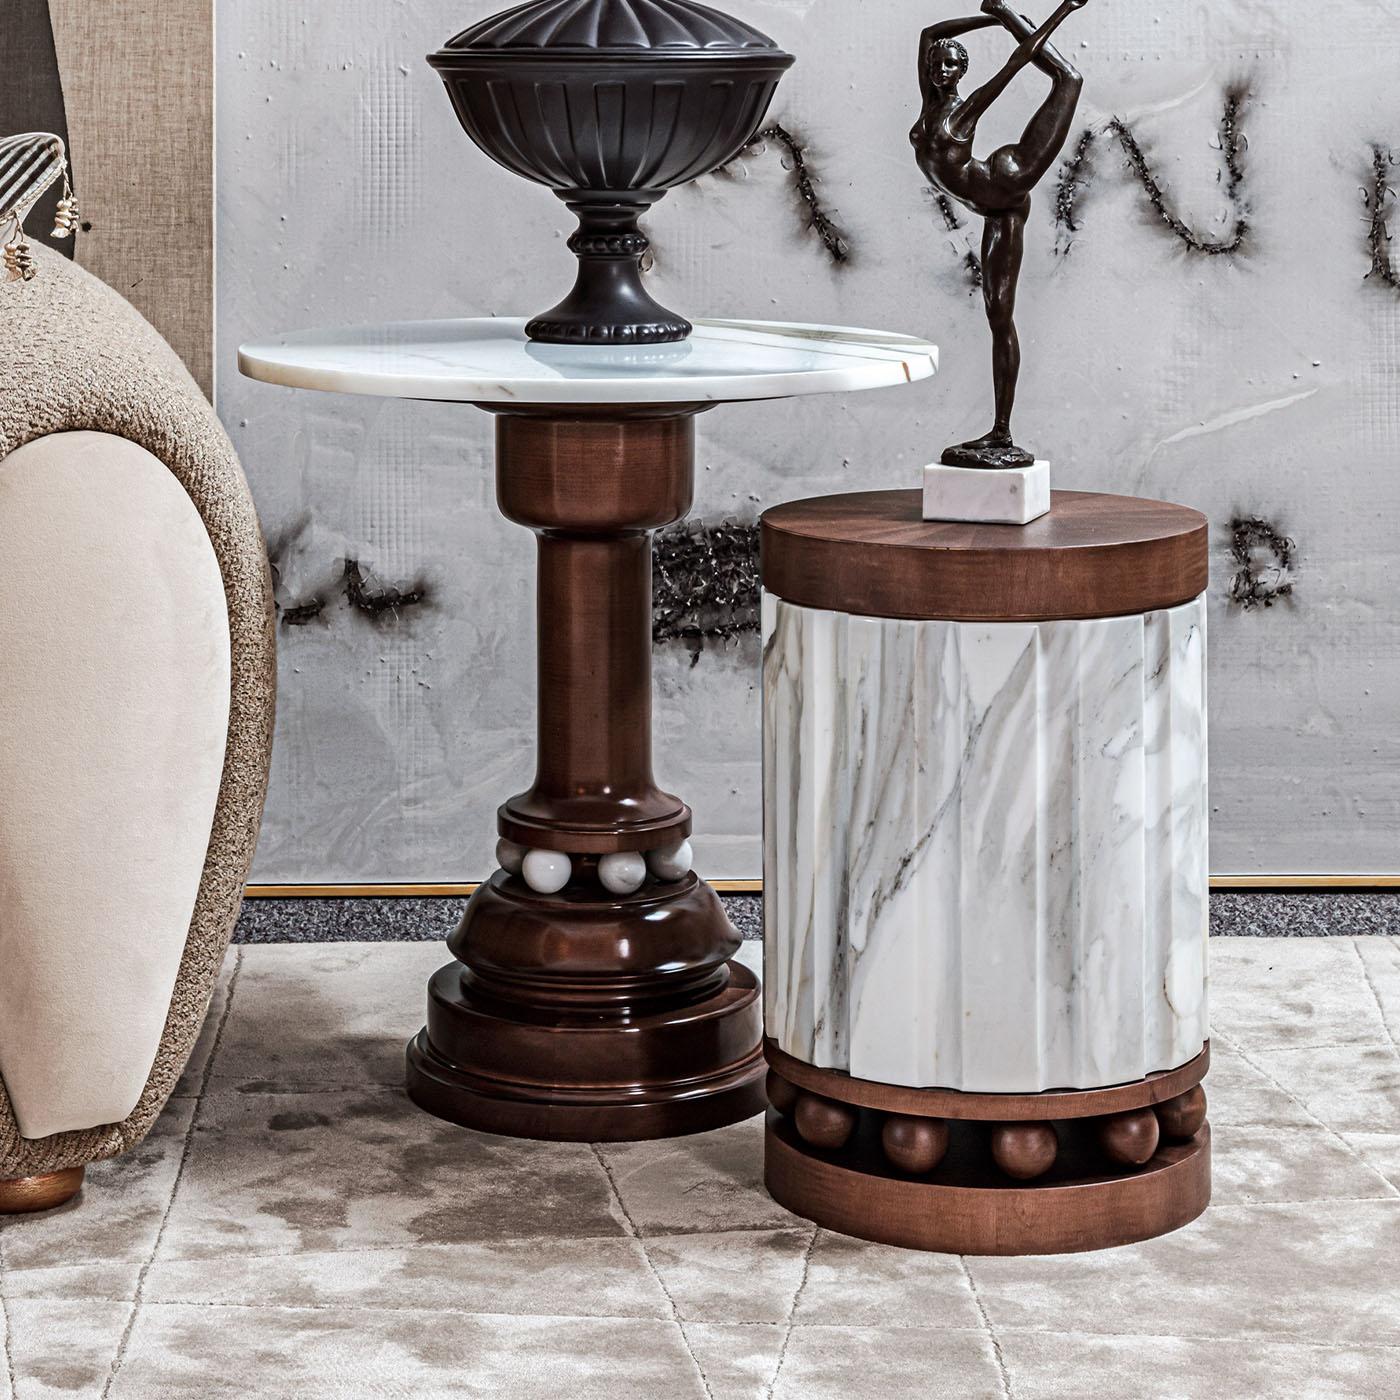 Cette table d'appoint se distingue par sa base en bois massif ornée de marbre. La structure délicate est ancrée sur des sphères de marbre Calacatta Borghini.